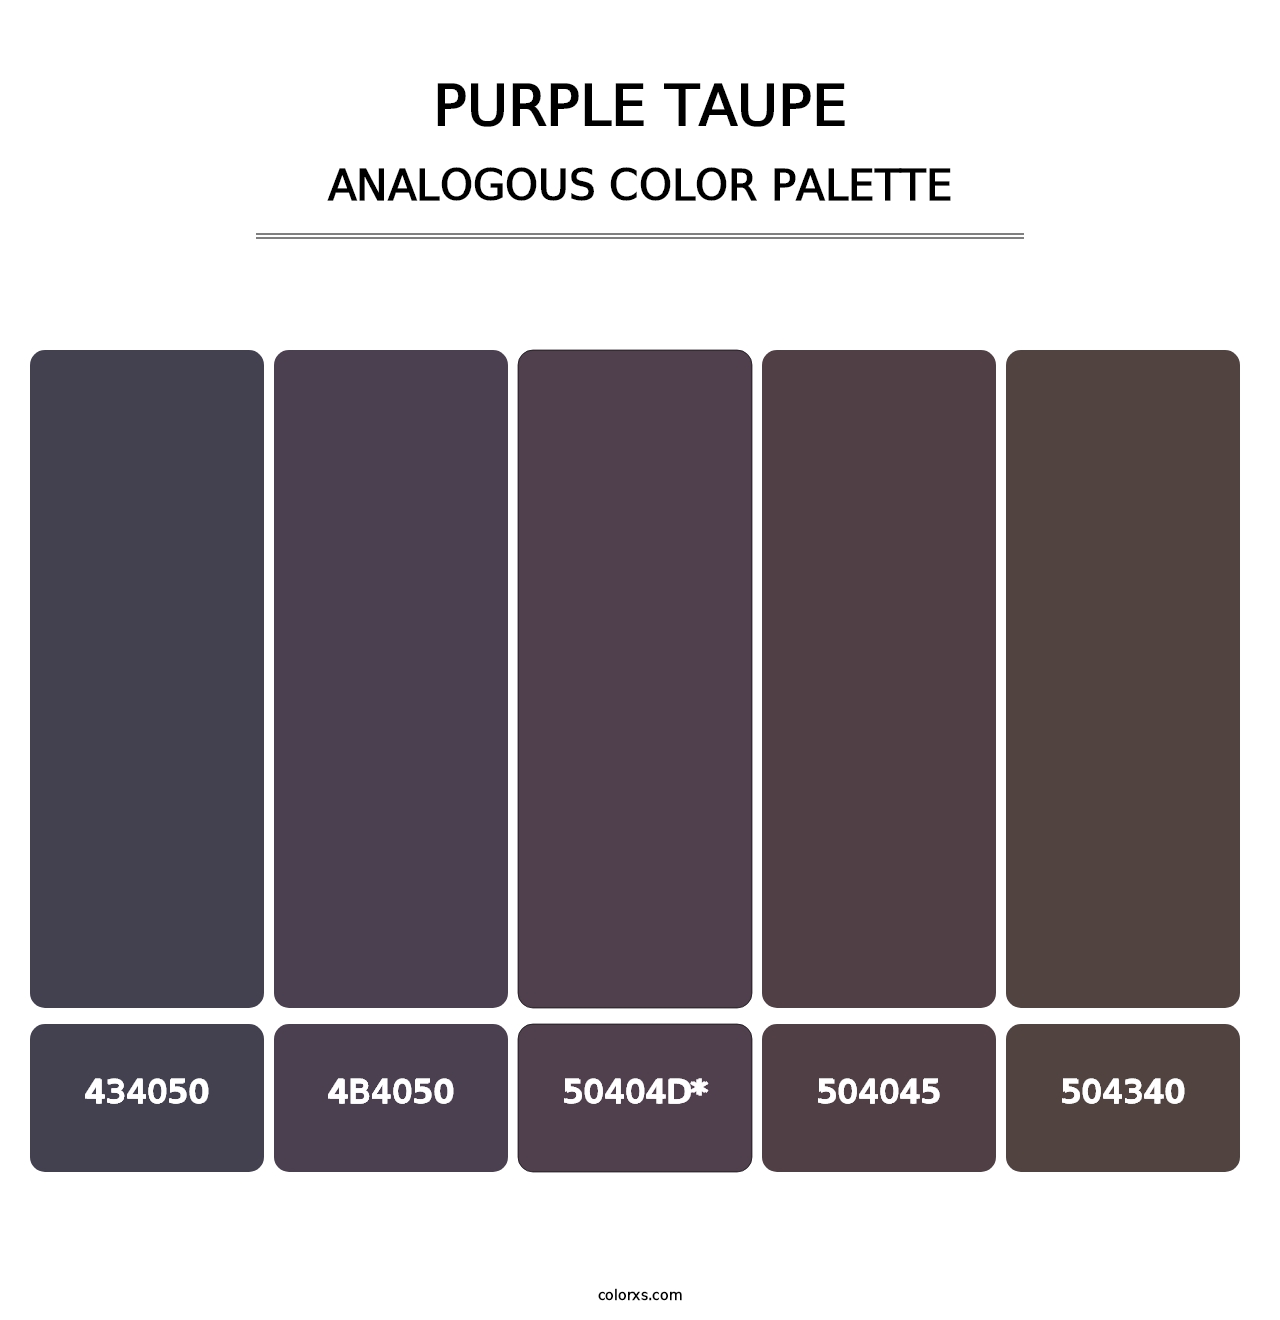 Purple Taupe - Analogous Color Palette